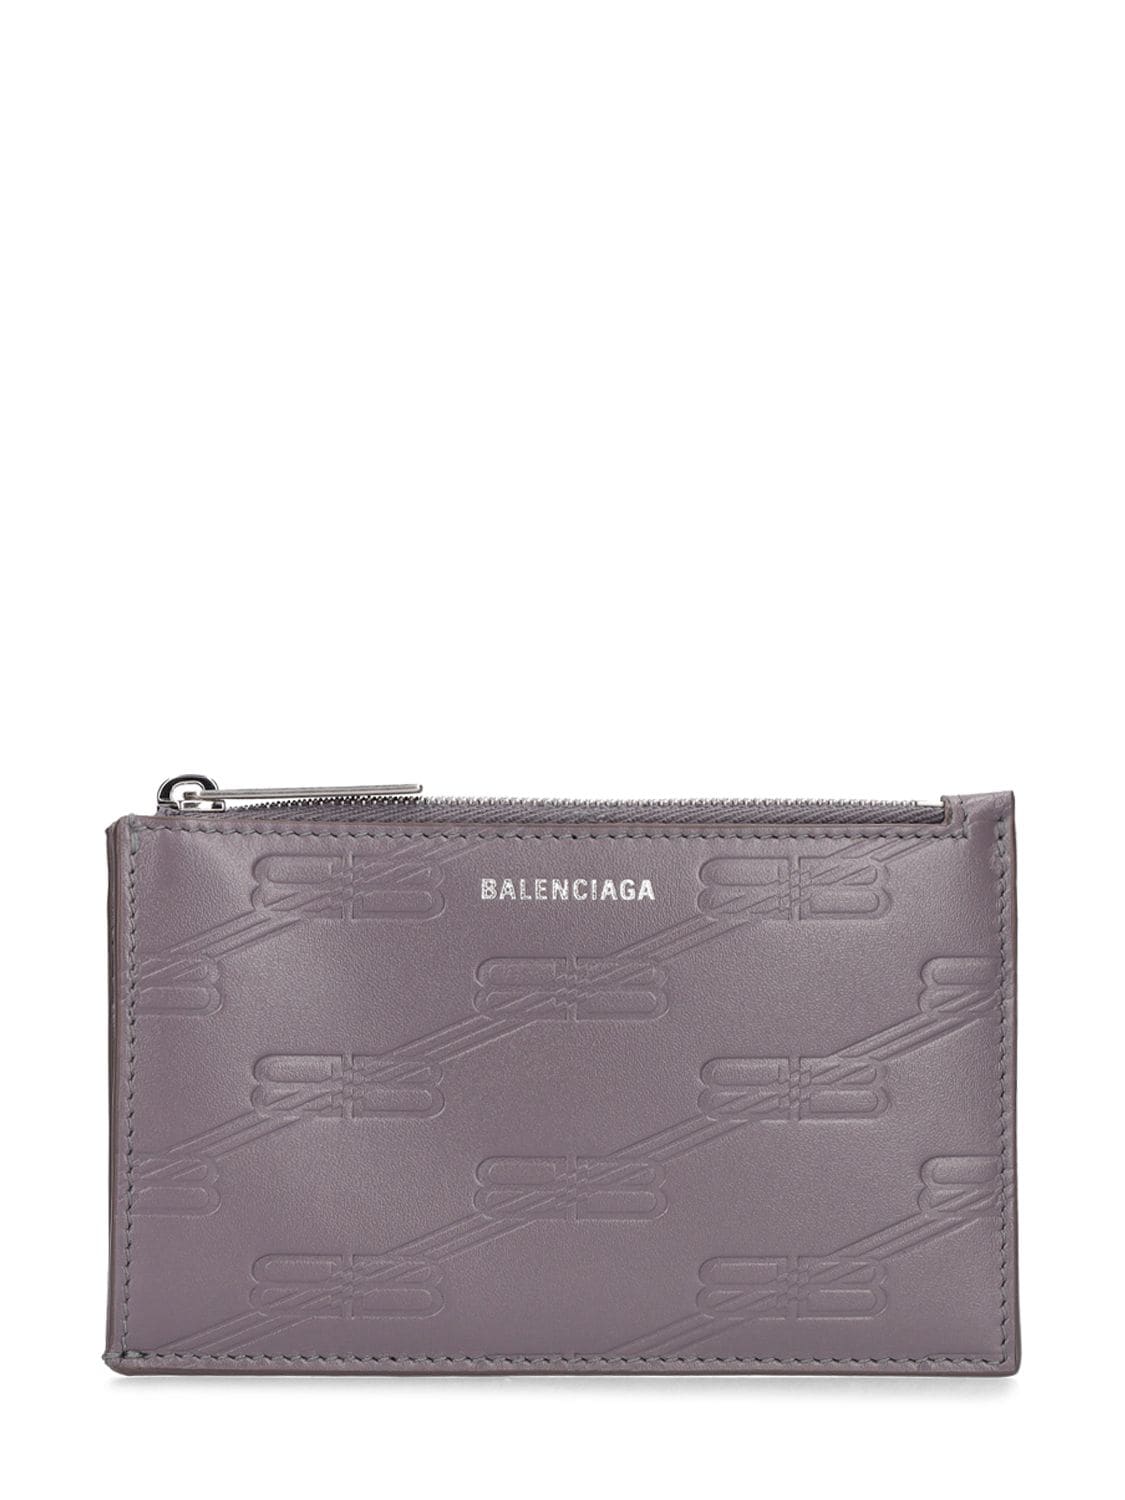 Bb Monogram Leather Wallet - BALENCIAGA - Modalova